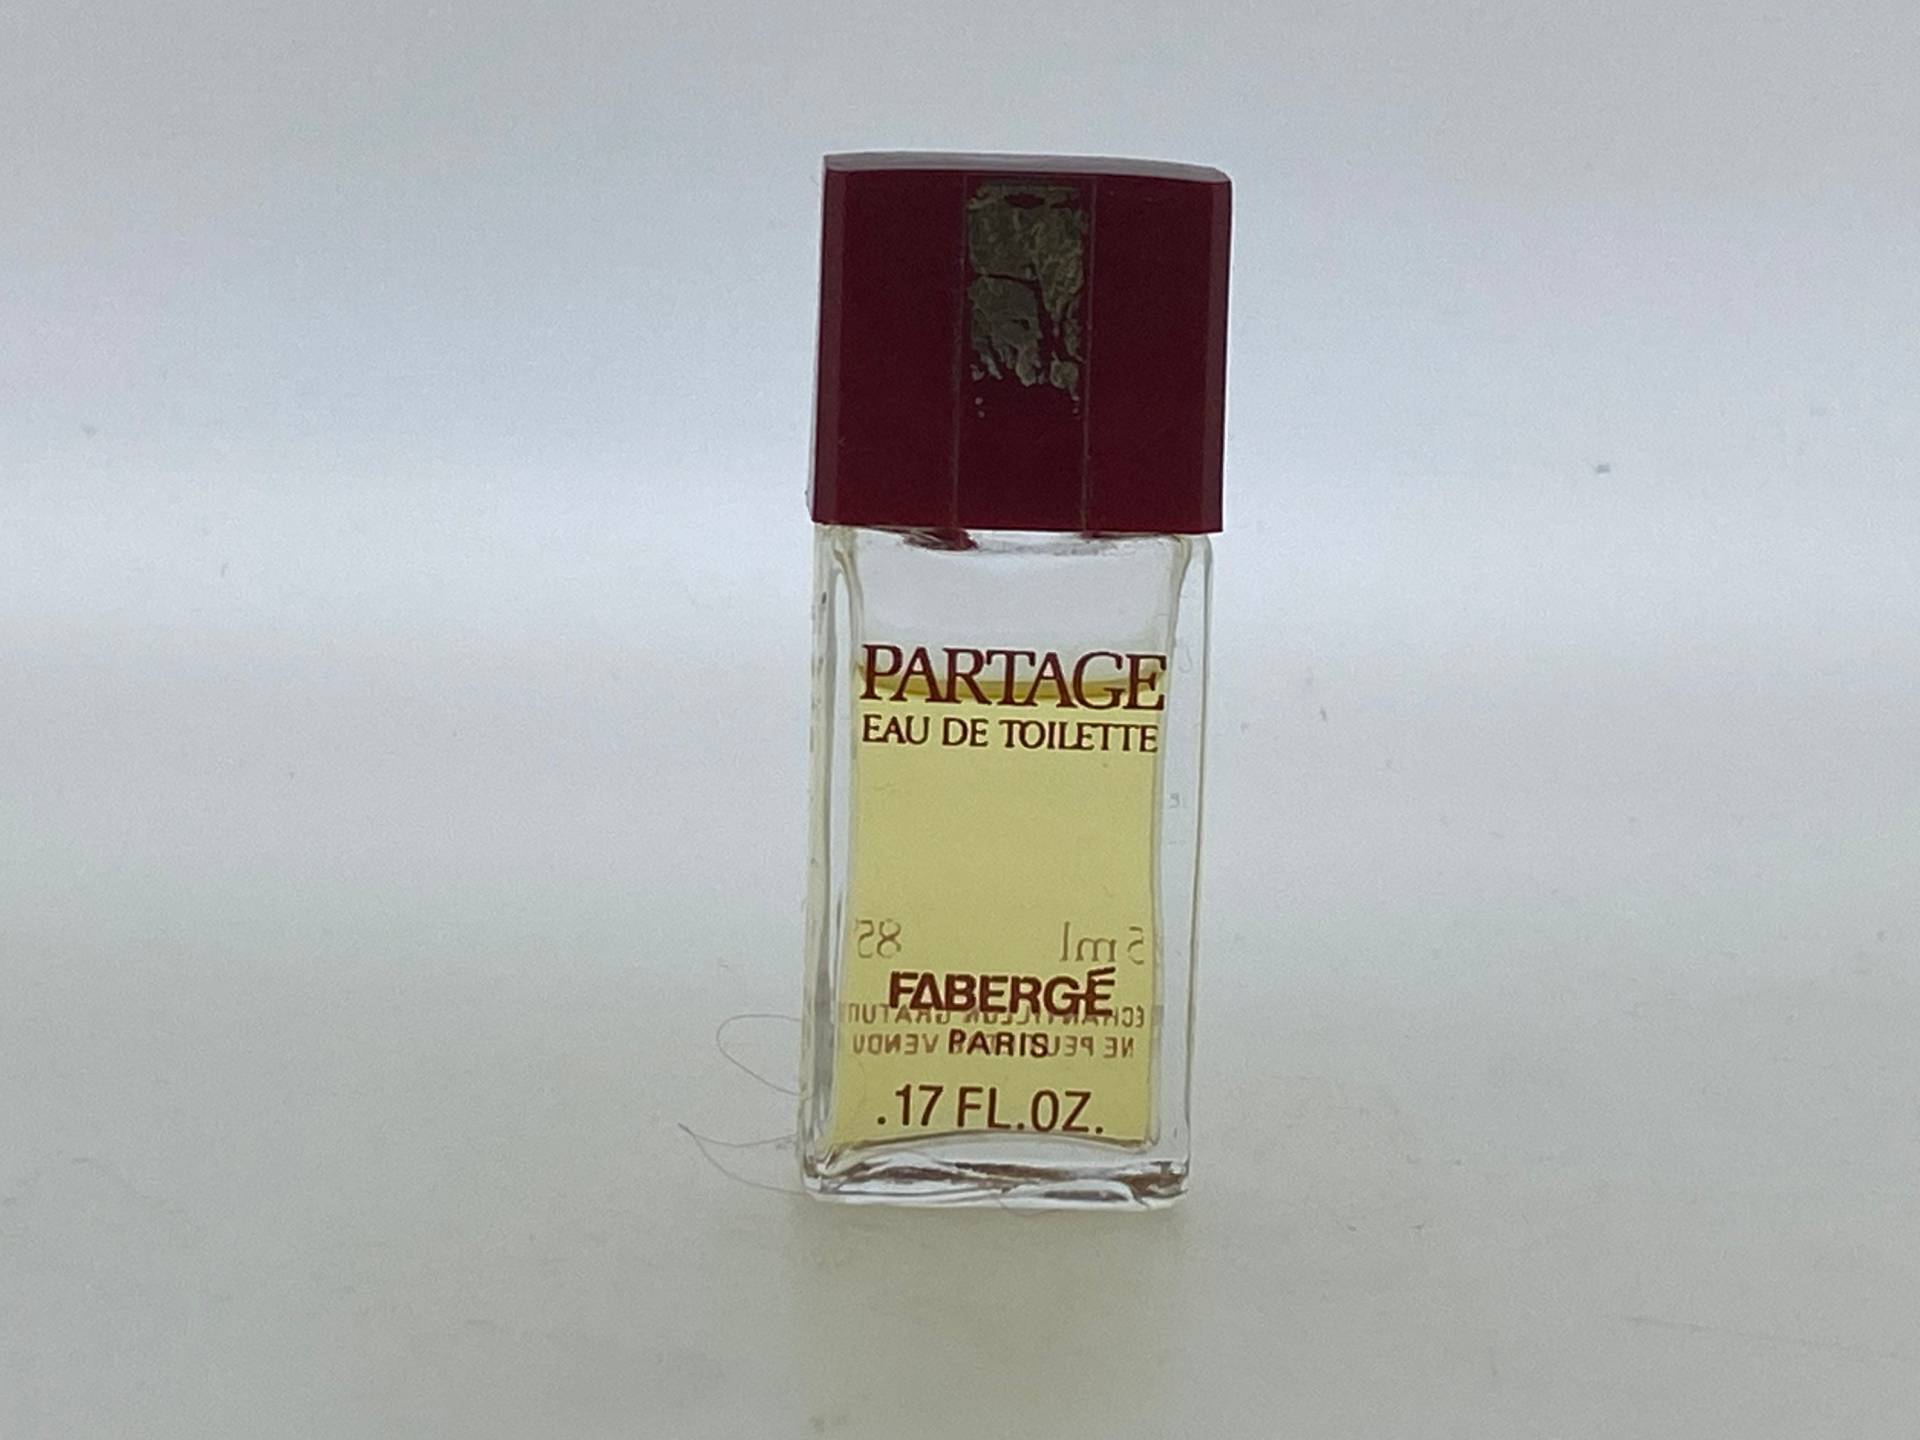 Partage Fabergé 1979 Eau De Toilette Miniatur 5 Ml Full 85-90 % von Etsy - VintagePerfumeShop